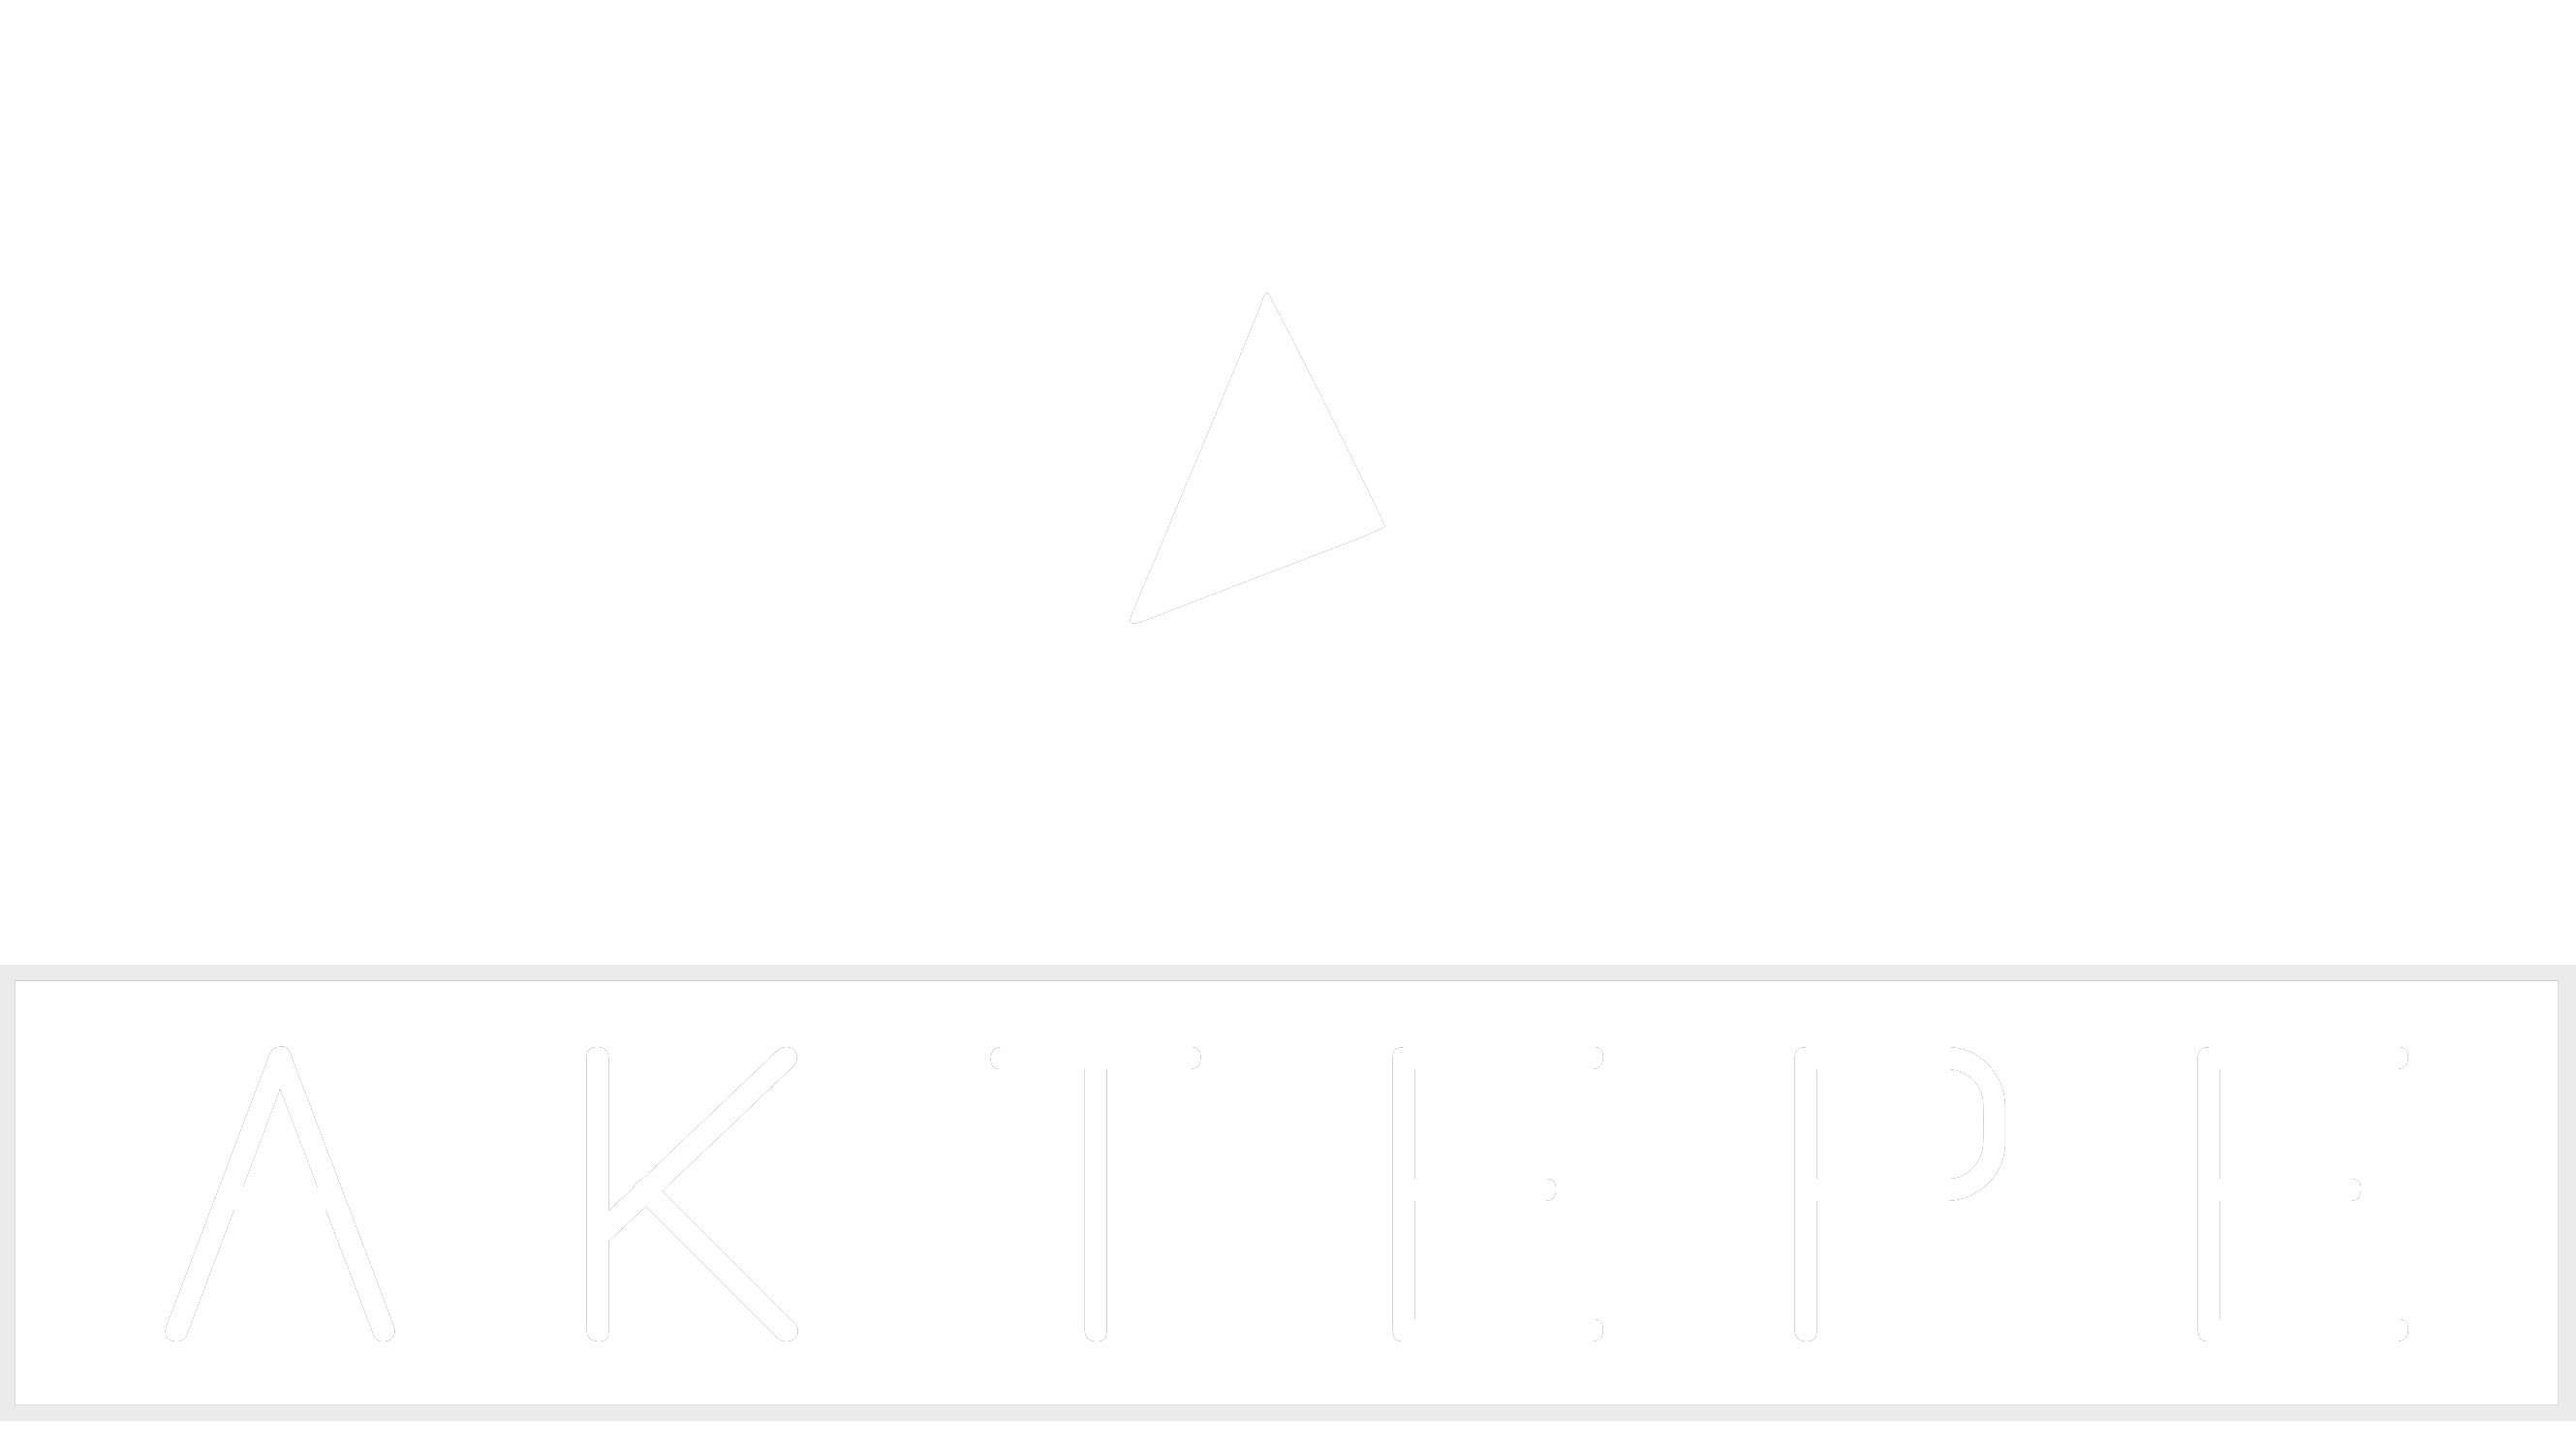 FREEMONT - Aktepe Shop - Oto Müzik Görüntü Navigasyon Sistemleri ve Teyp Çerçevesi Satış Merkezi